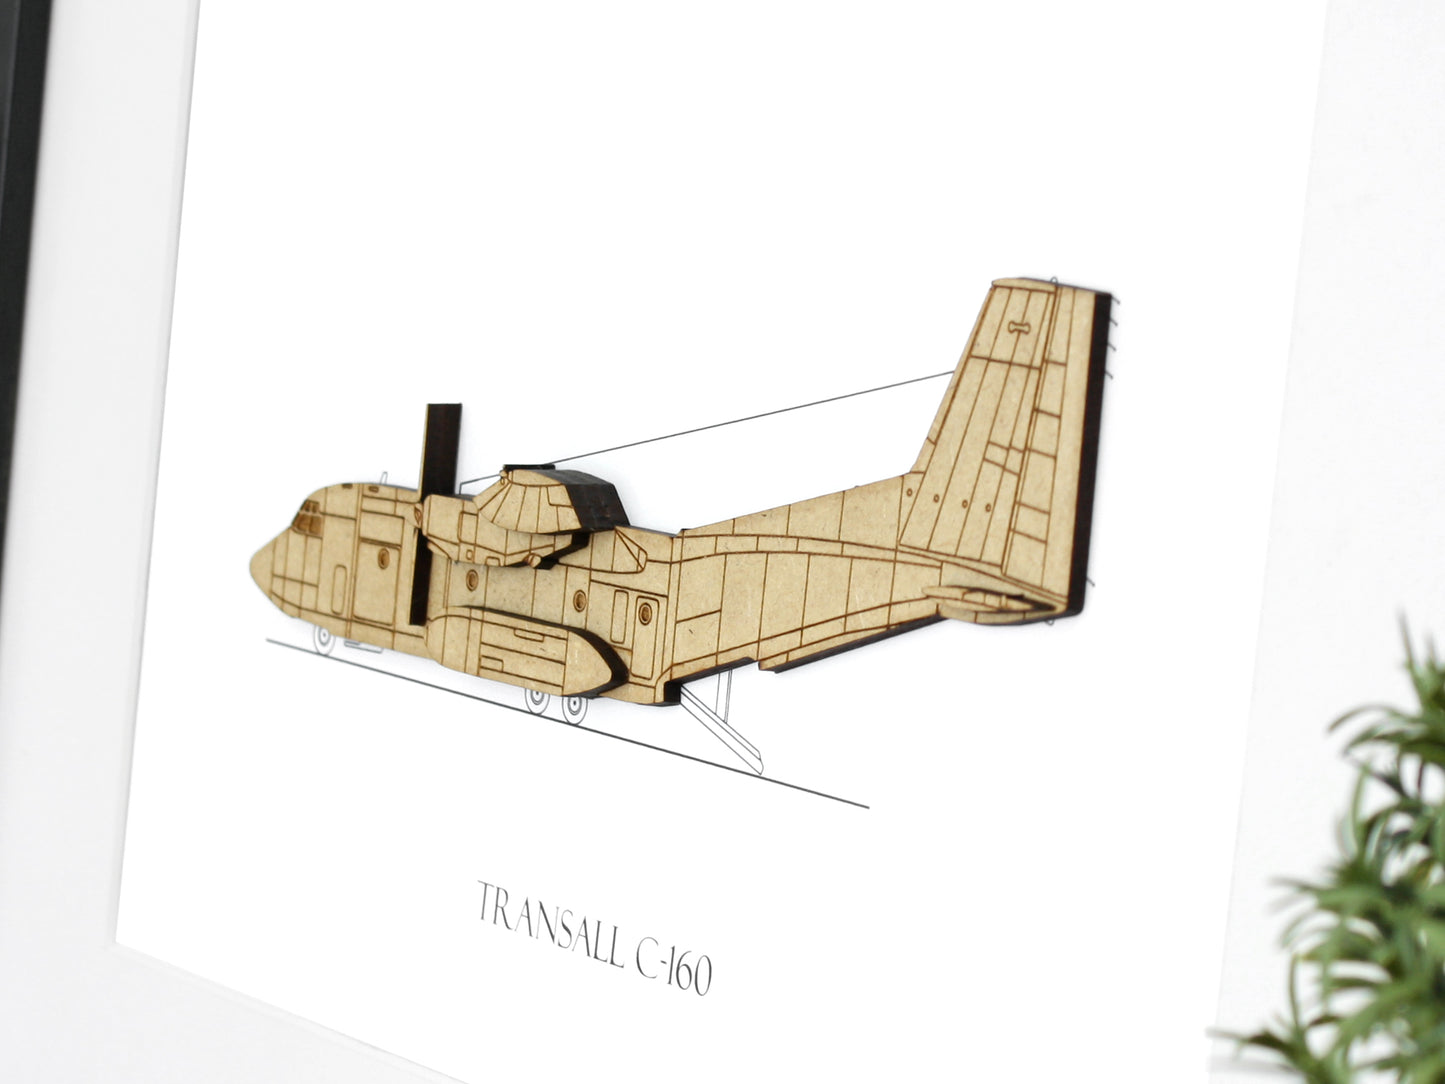 Transall C-160 aircraft blueprint art